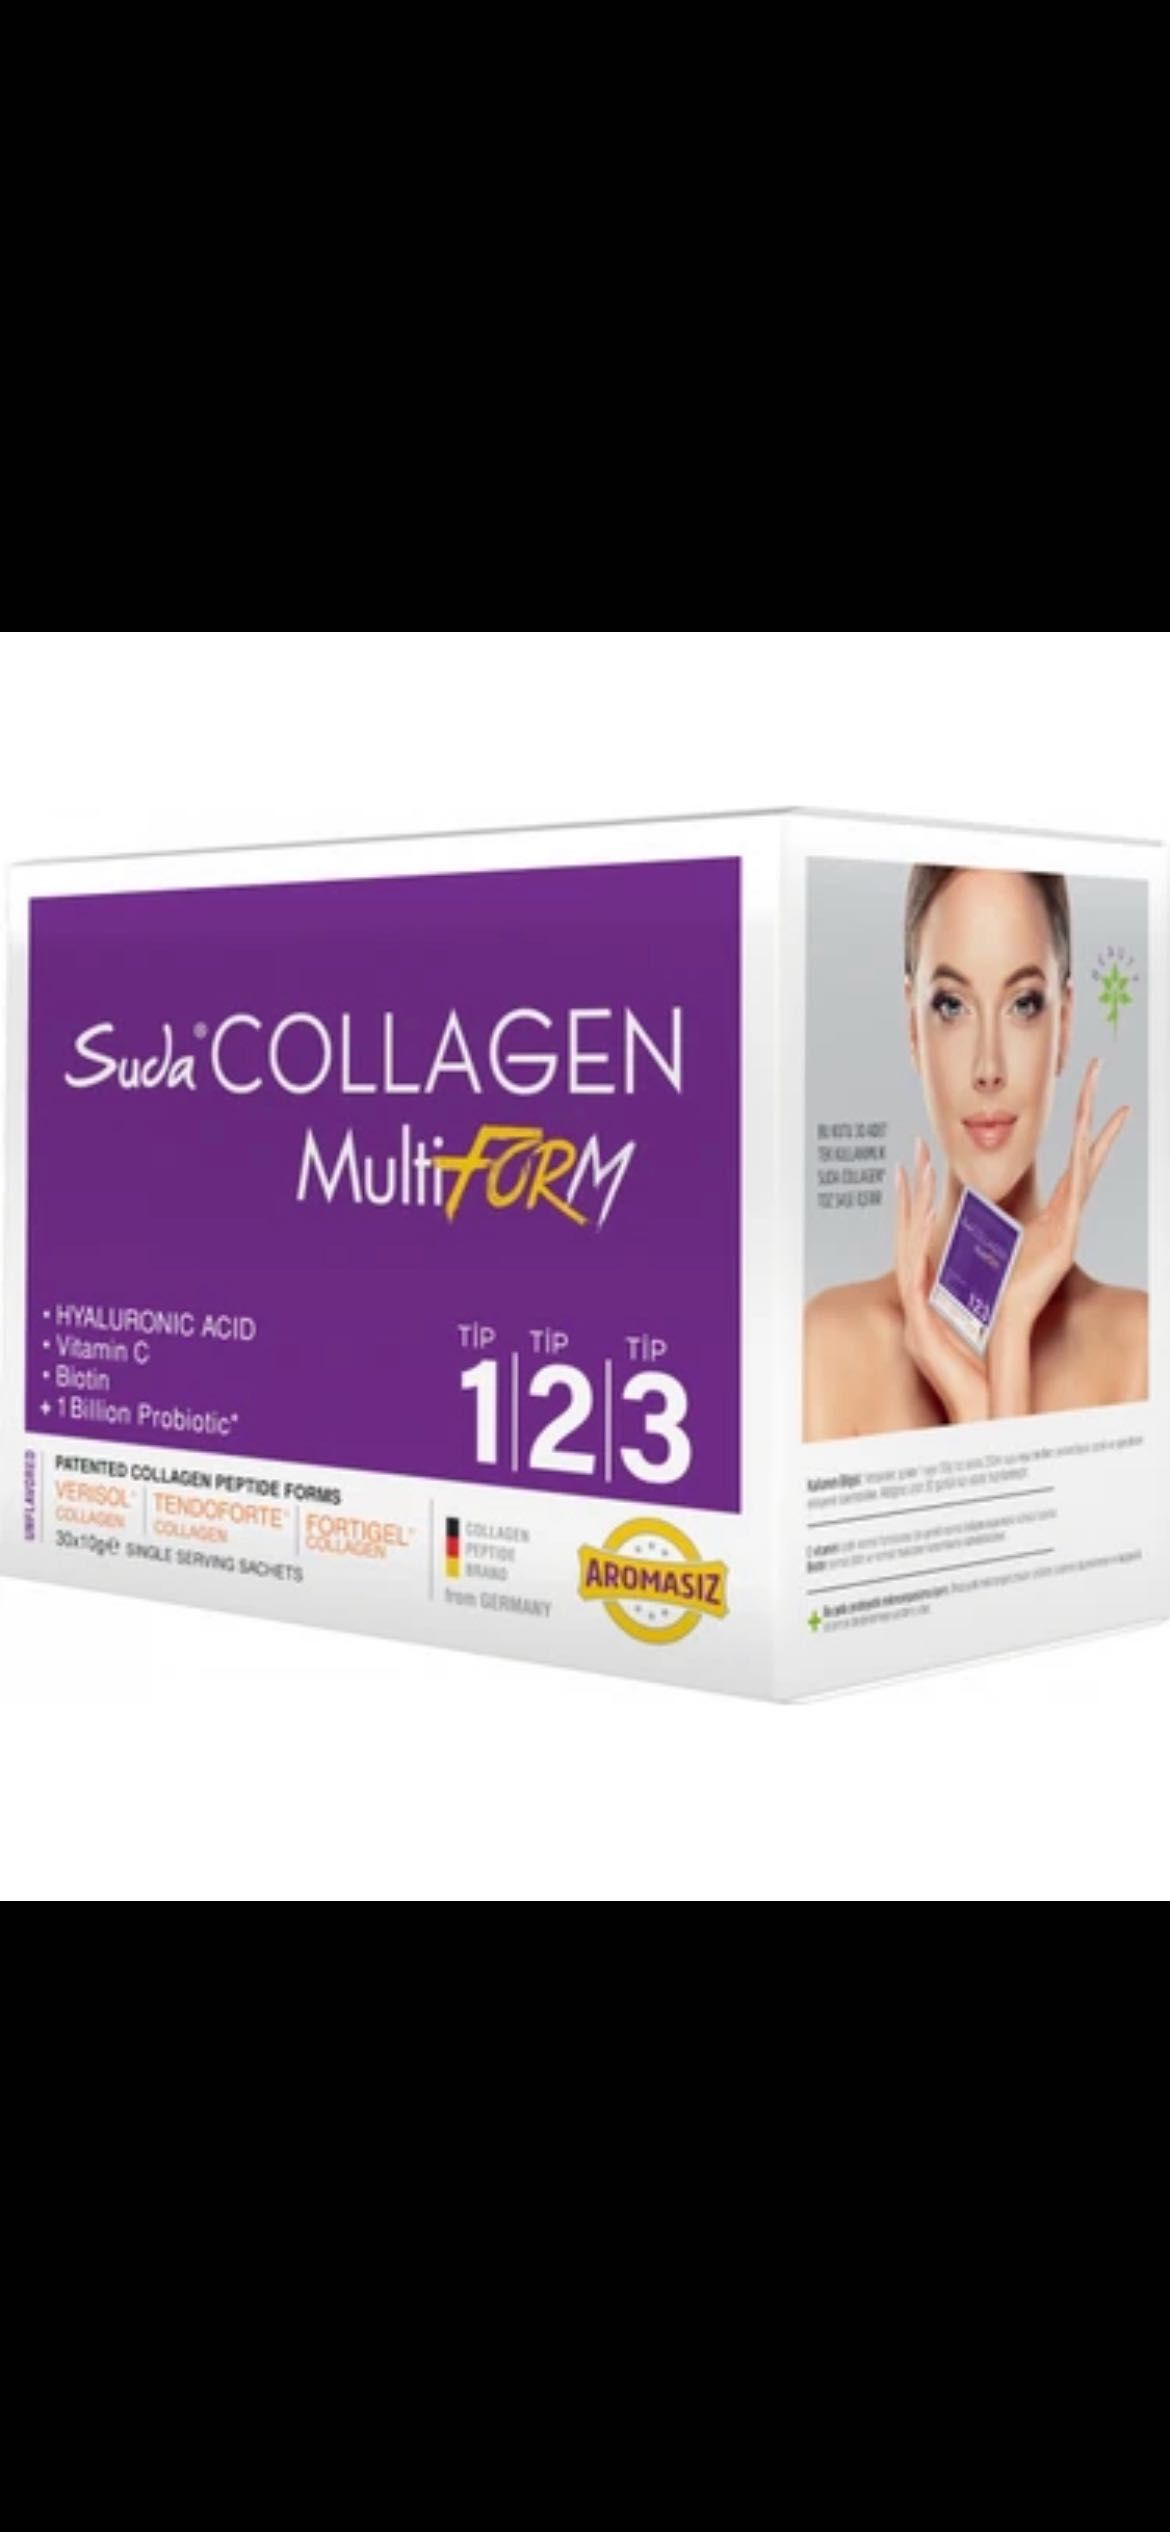 Collagen 123 multiform